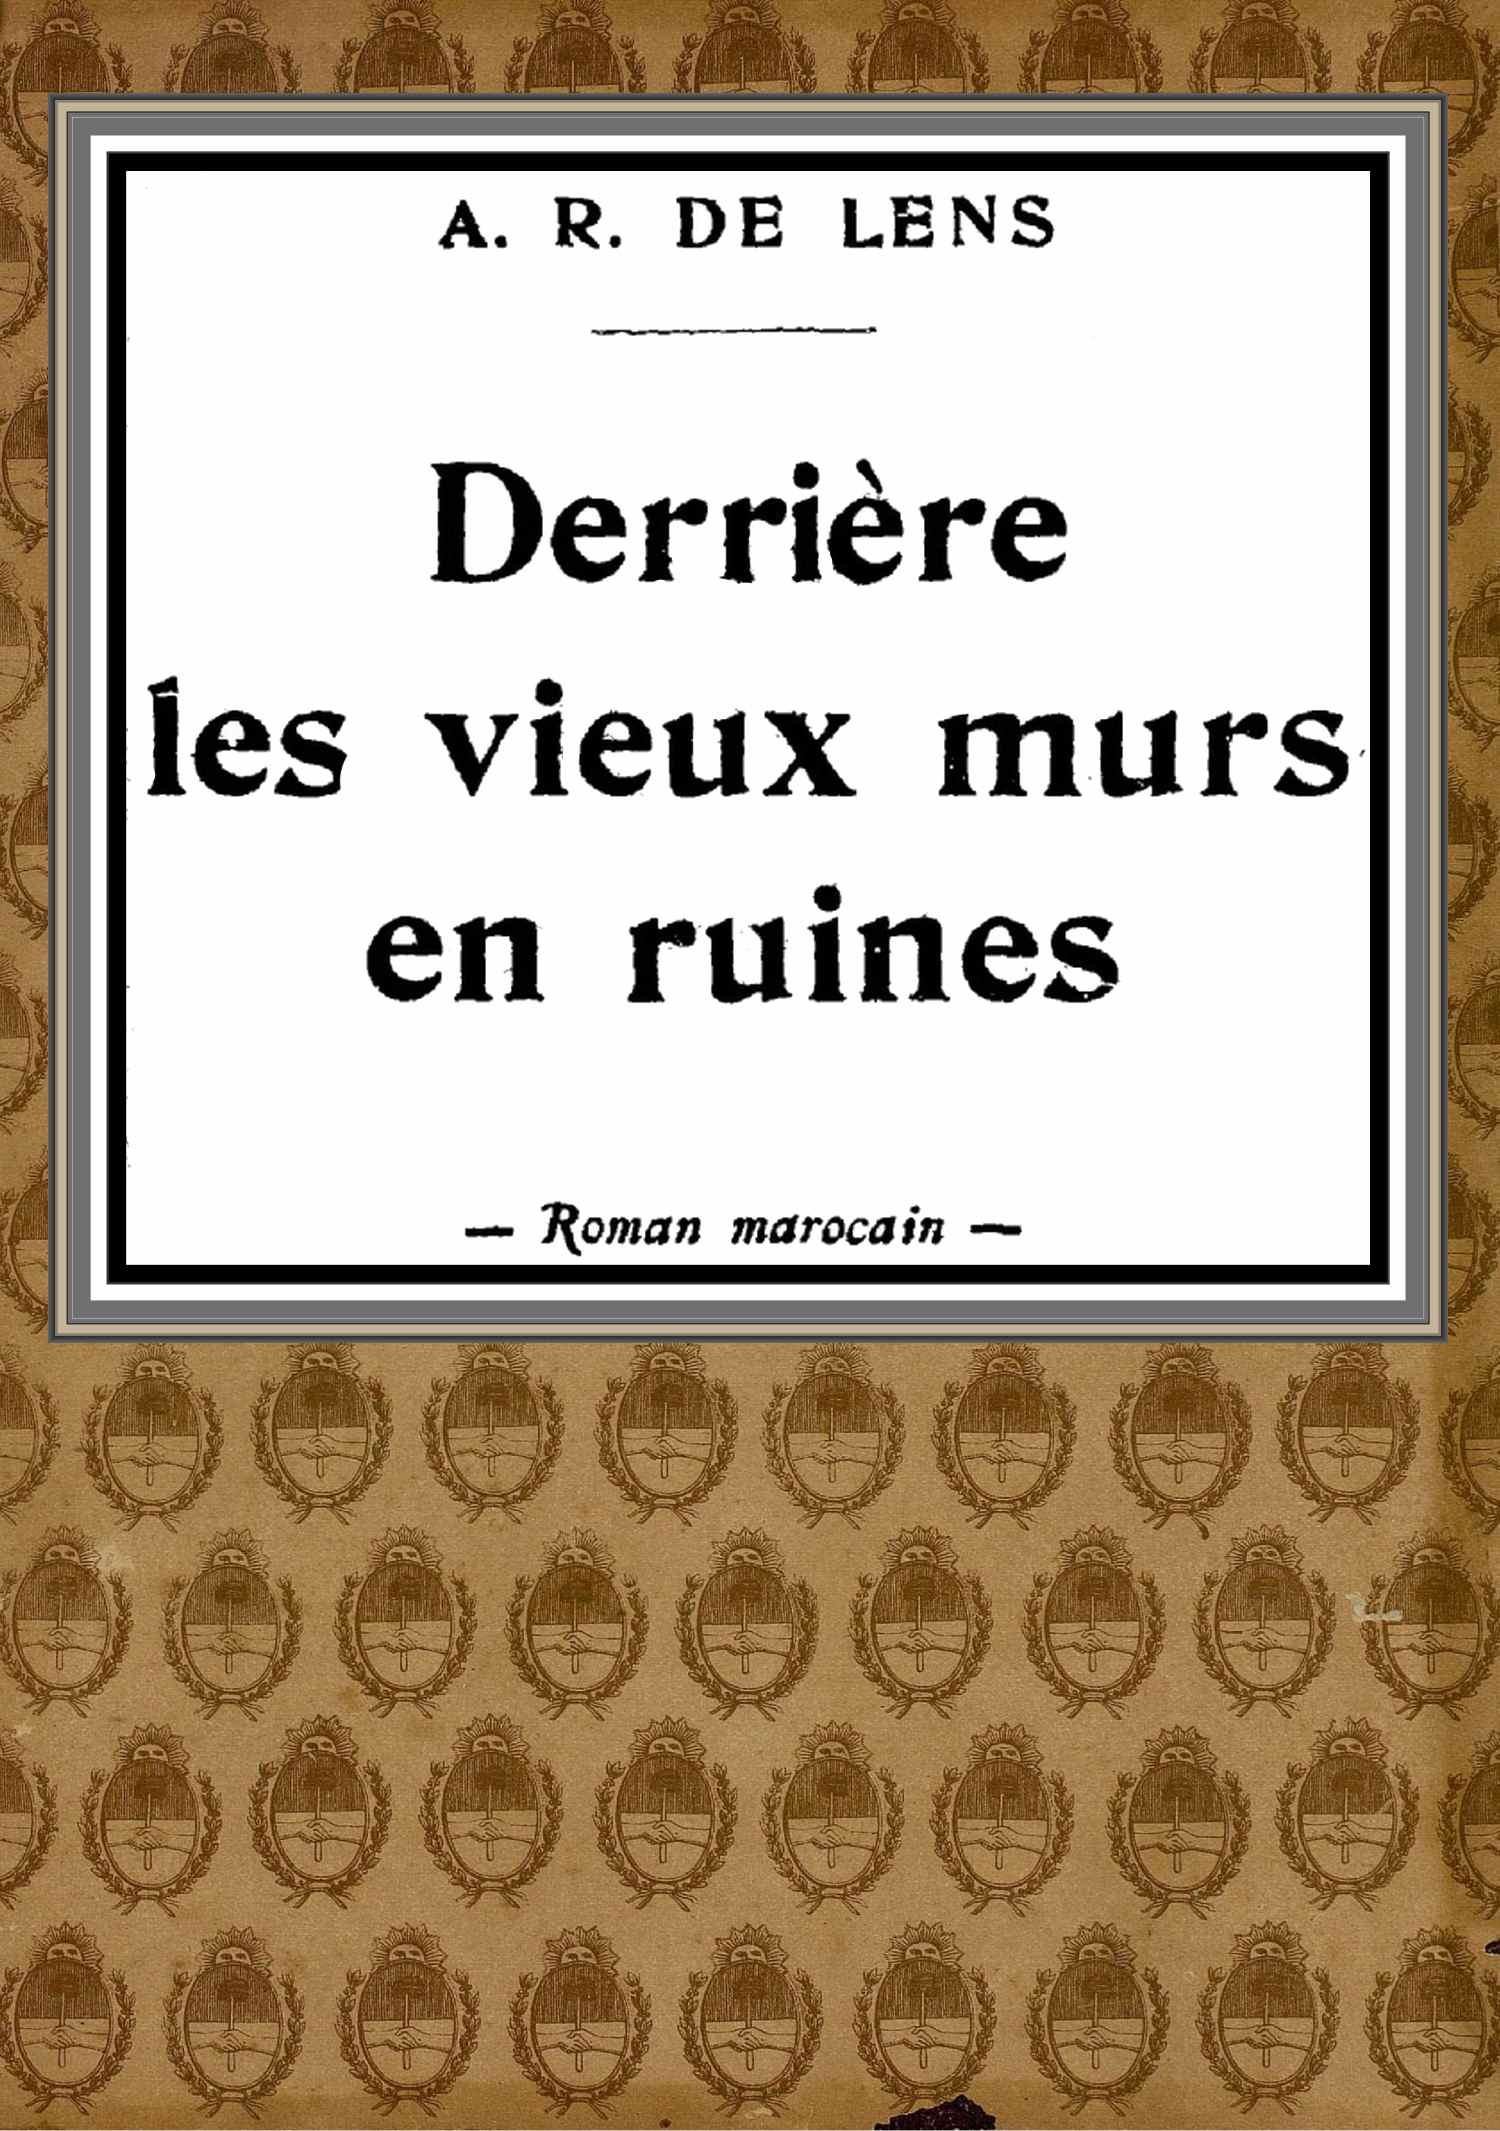 The Project Gutenberg eBook of Derrière les vieux murs en ruines, par Aline Réveillaud de Lens. image